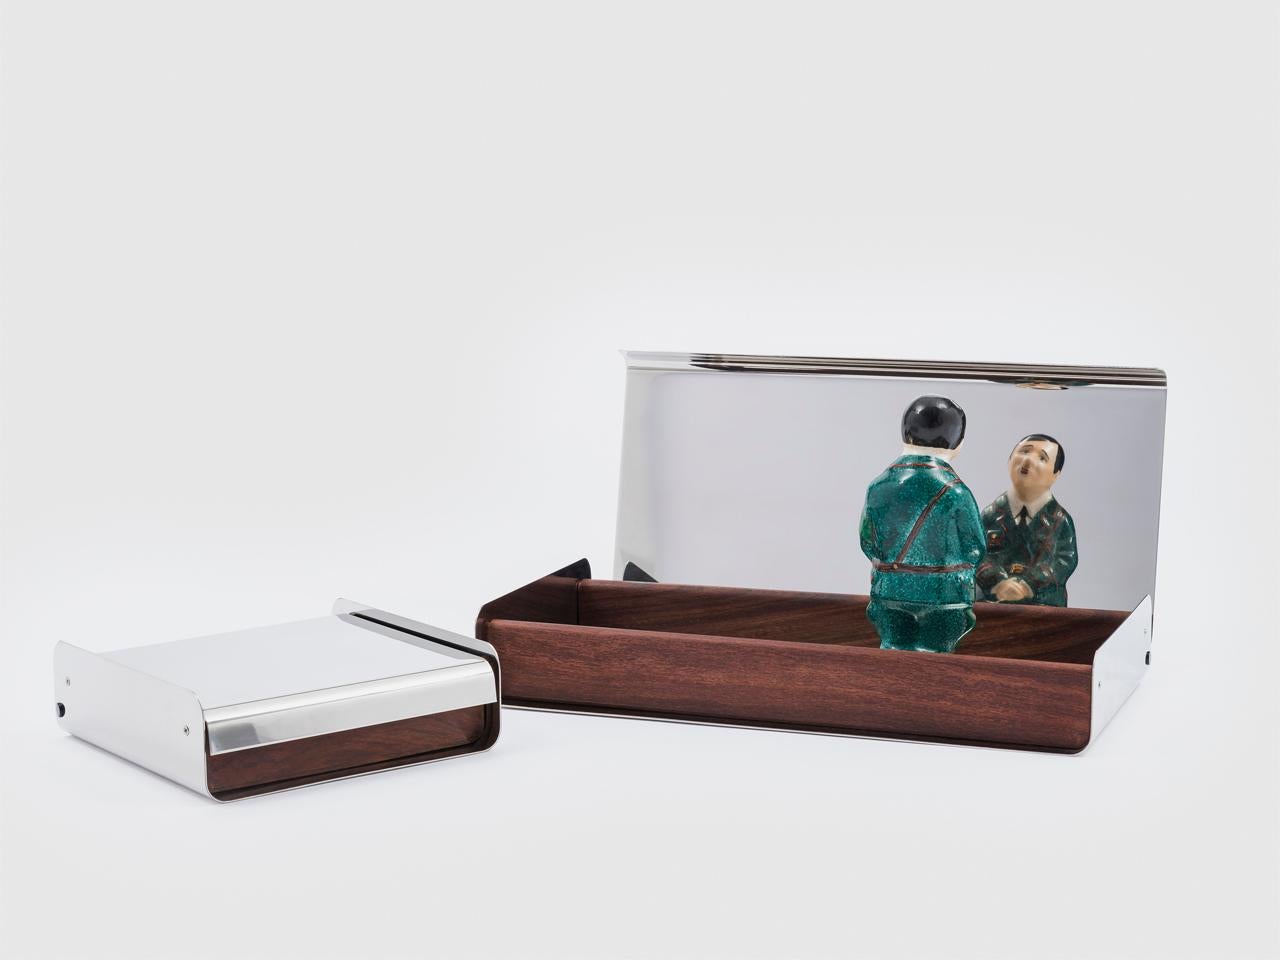 Citera est une petite boîte réalisée à partir d'une combinaison de matériaux contrastés, acier inoxydable poli et bois de rose. Le couvercle peut être ouvert sur des charnières ou simplement posé sur le dessus et les côtés et le fond sont reliés par